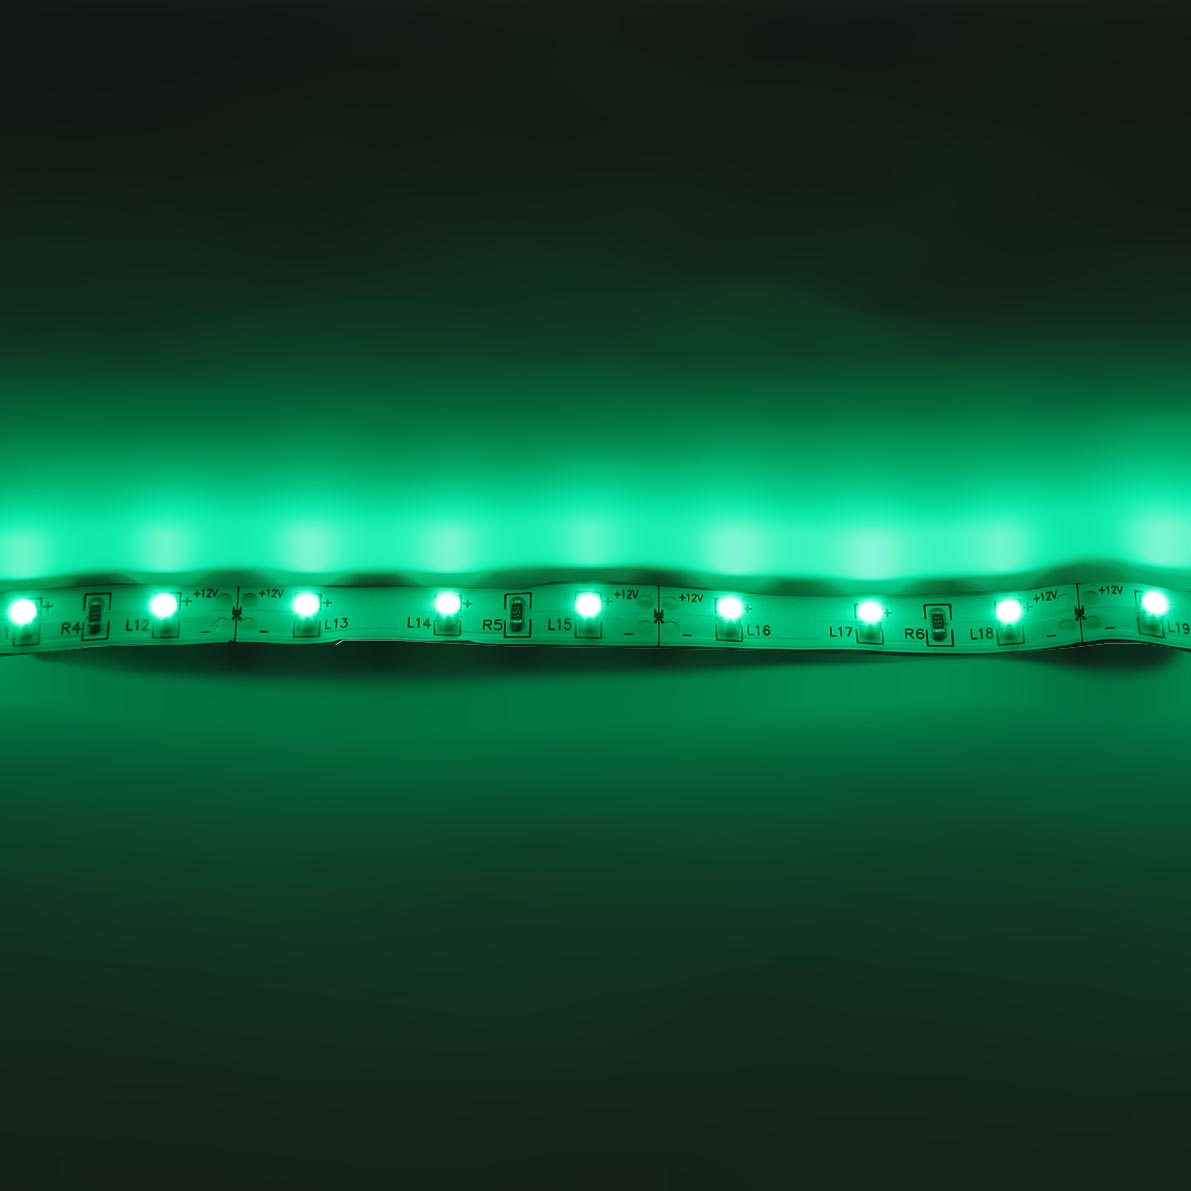 светодиодная лента standart pro class, 3528, 60 led/m, green, 12v, ip33, артикул 26949